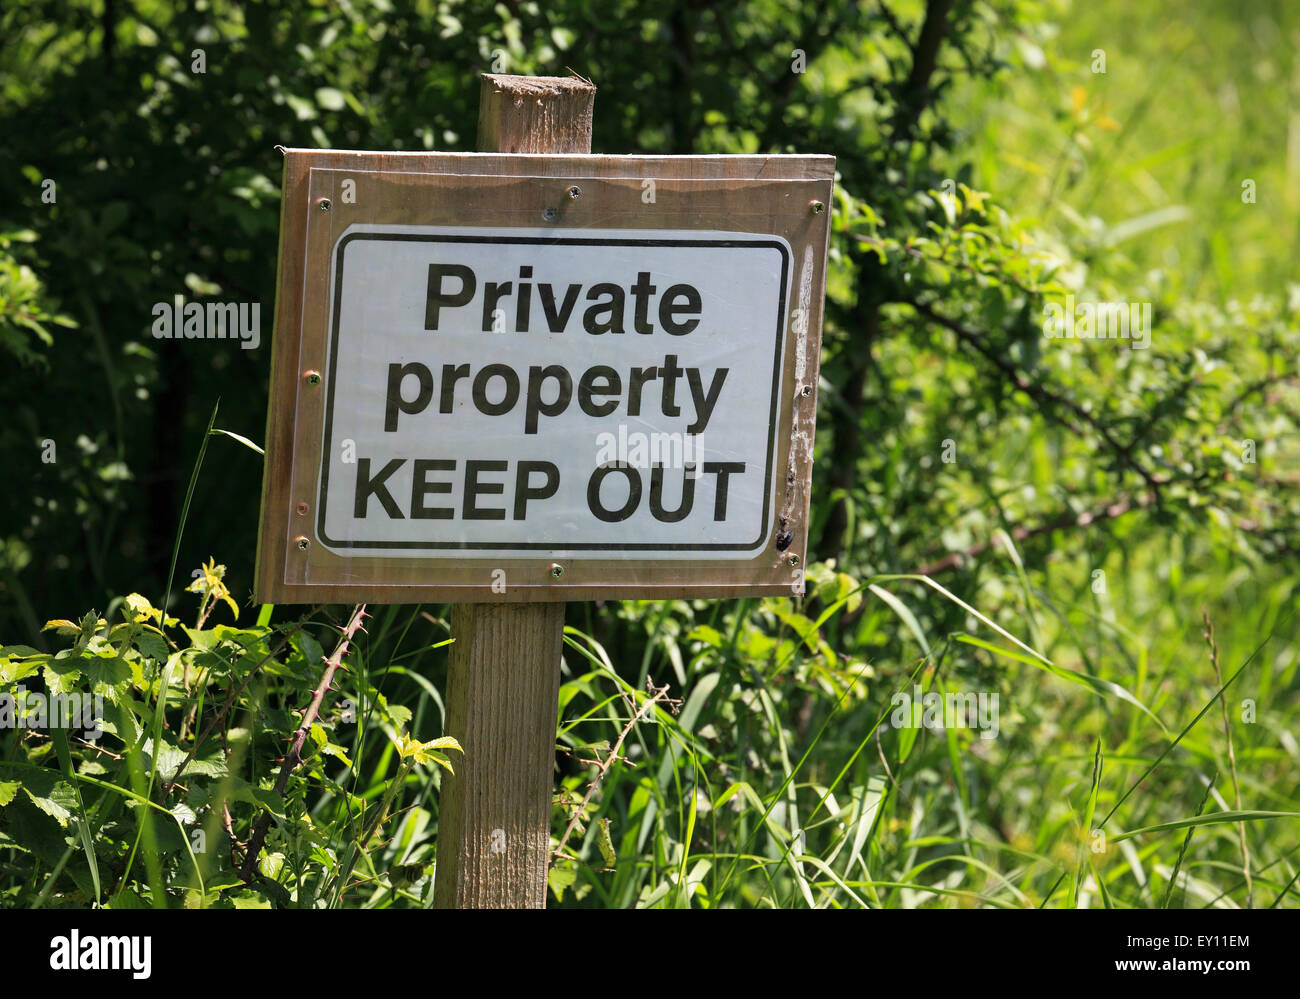 "Manténgase fuera de propiedad privada' en un cartel. Foto de stock